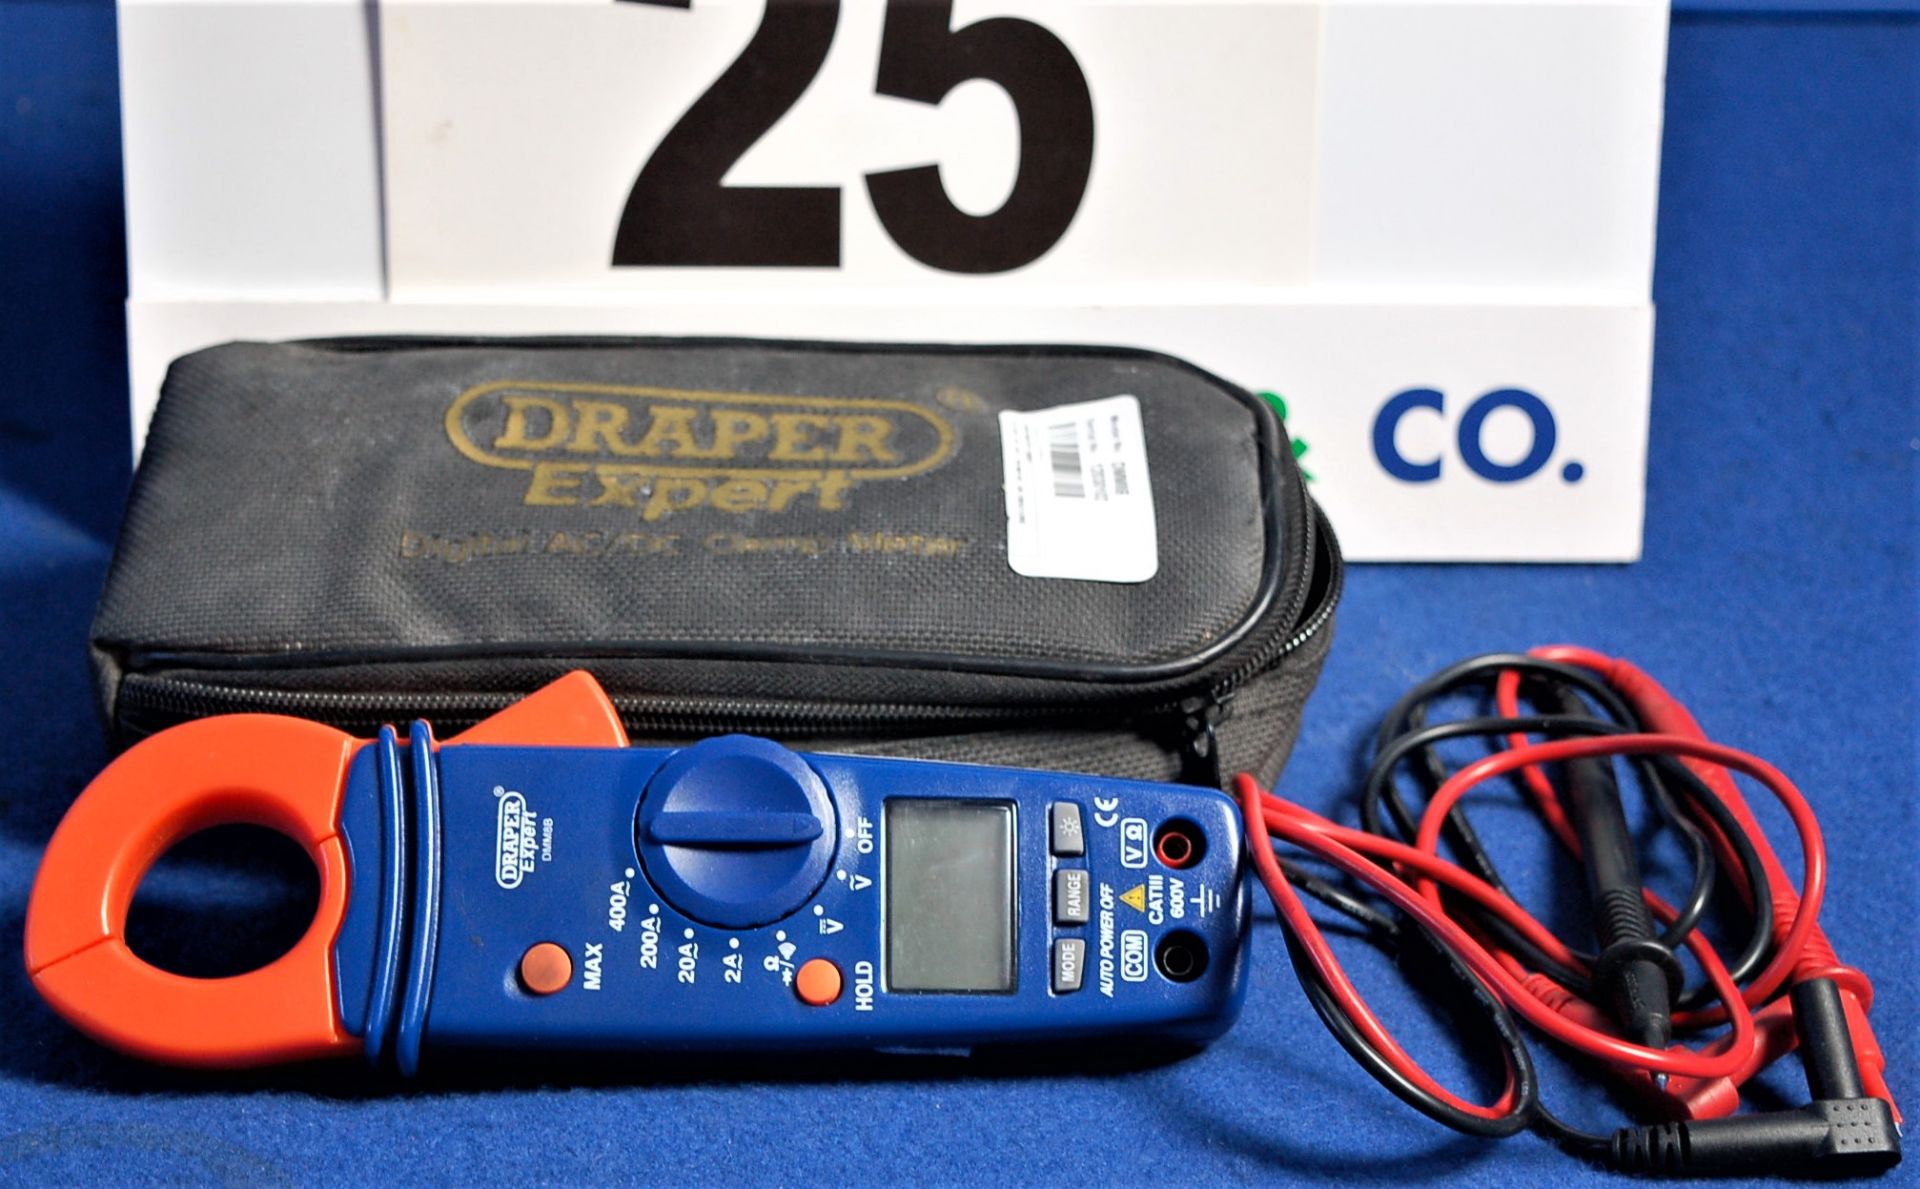 A DRAPER DMM8B Digital Clamp Meter in Soft Carry Case